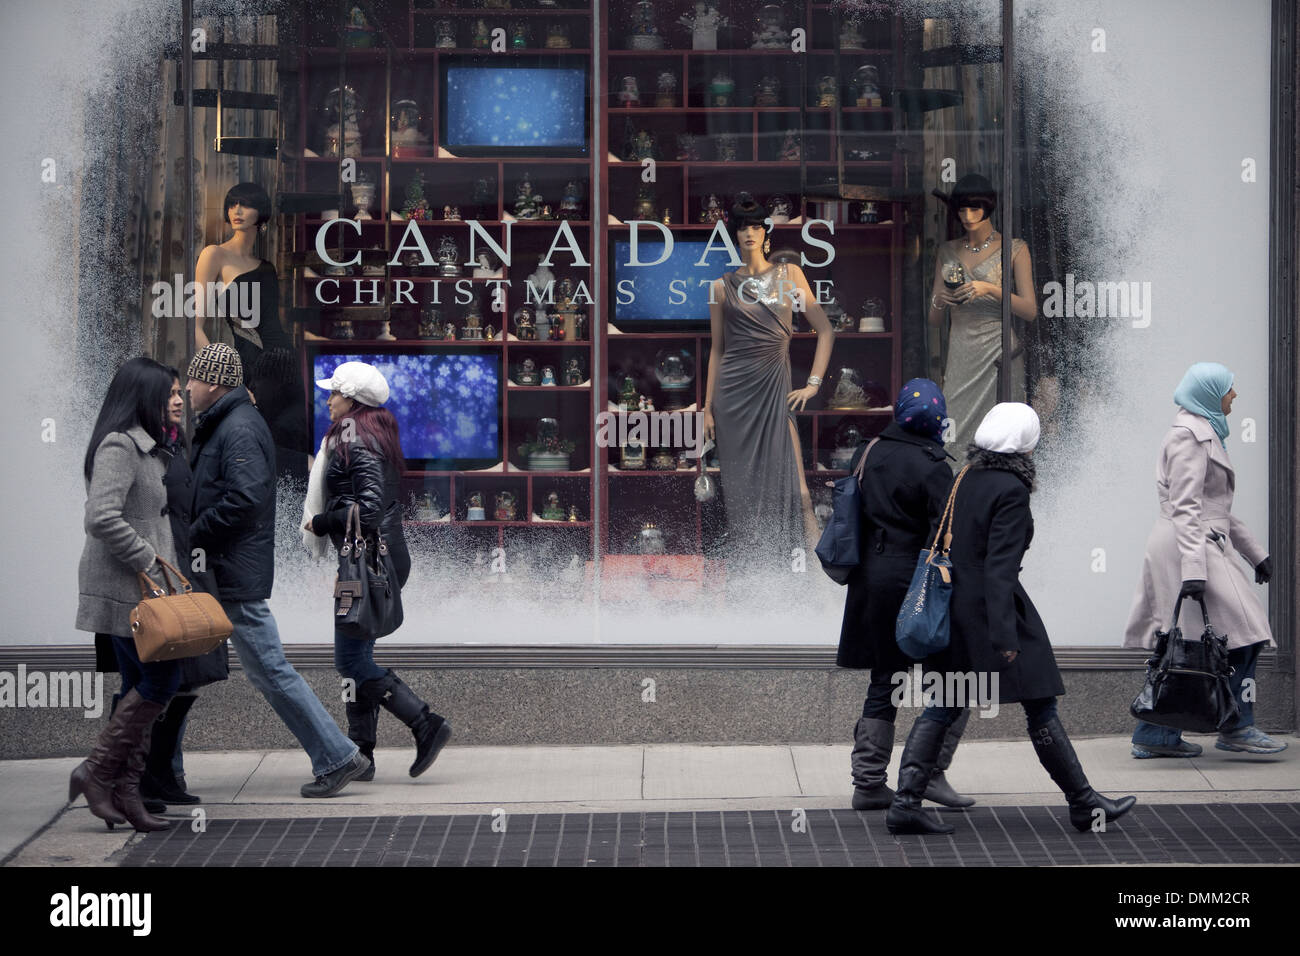 Le magasin la Baie de noël Les vitrines de Noël, Toronto, Canada, le 24 décembre 2012 Banque D'Images